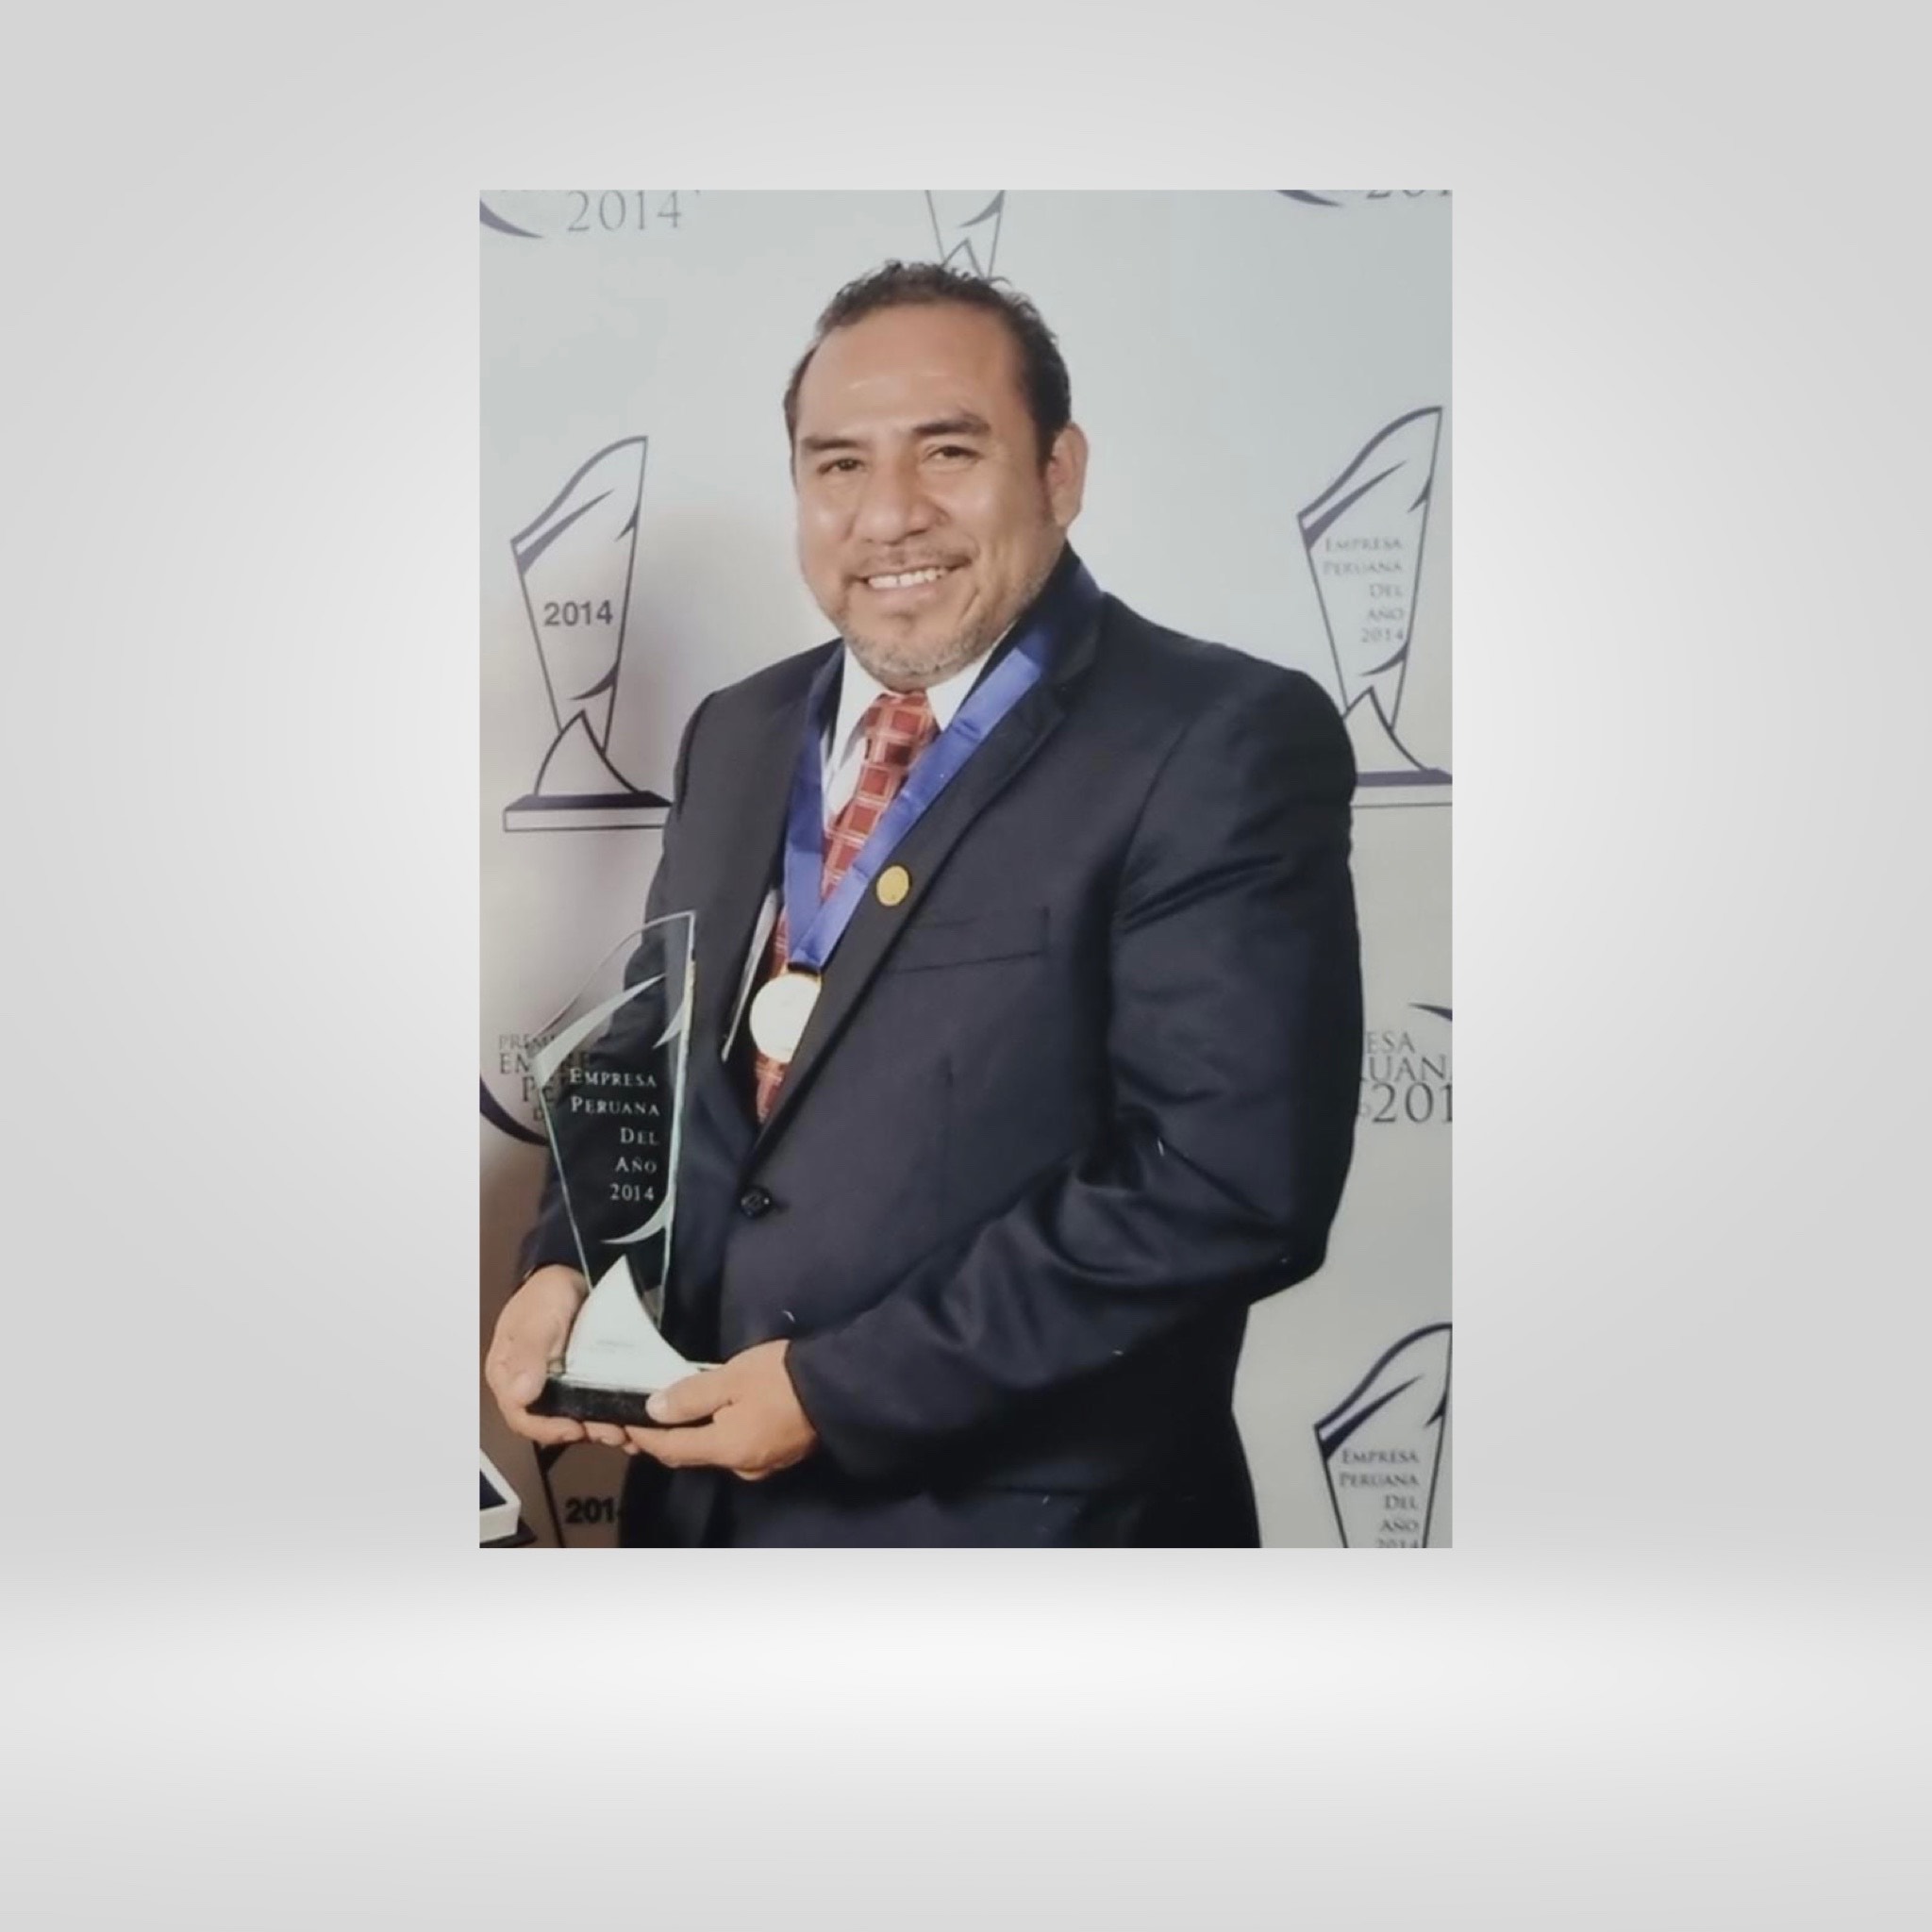 Premio Empresa Peruana del Año 2014